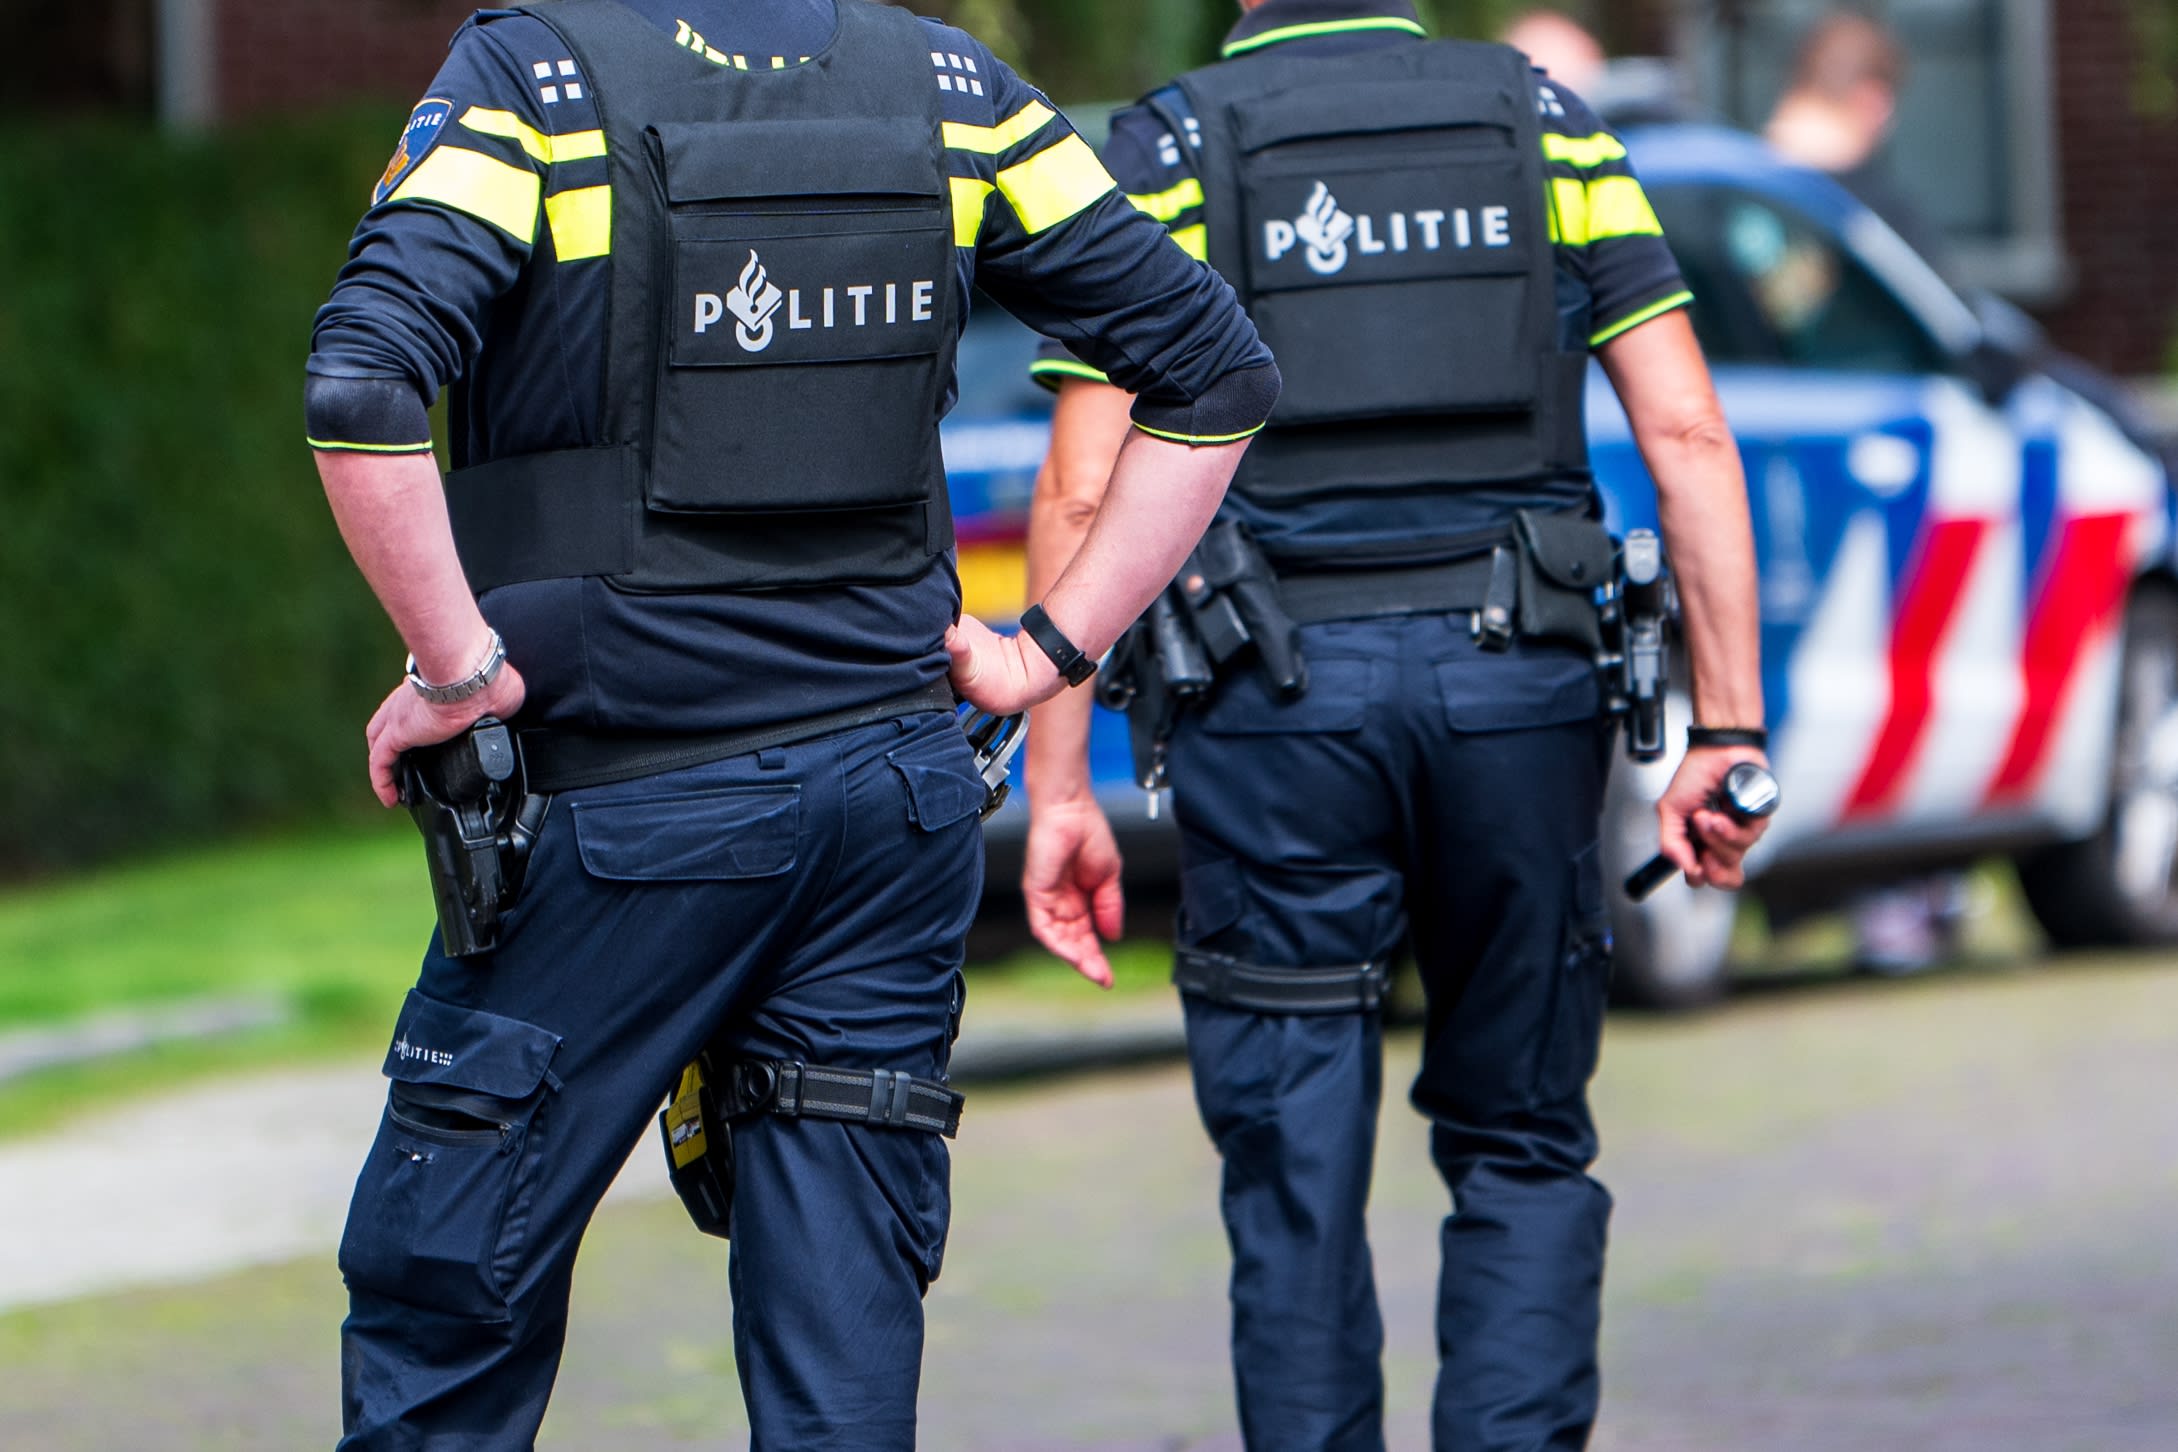 Politie heeft handen vol aan verwarde personen: record aantal meldingen gedaan